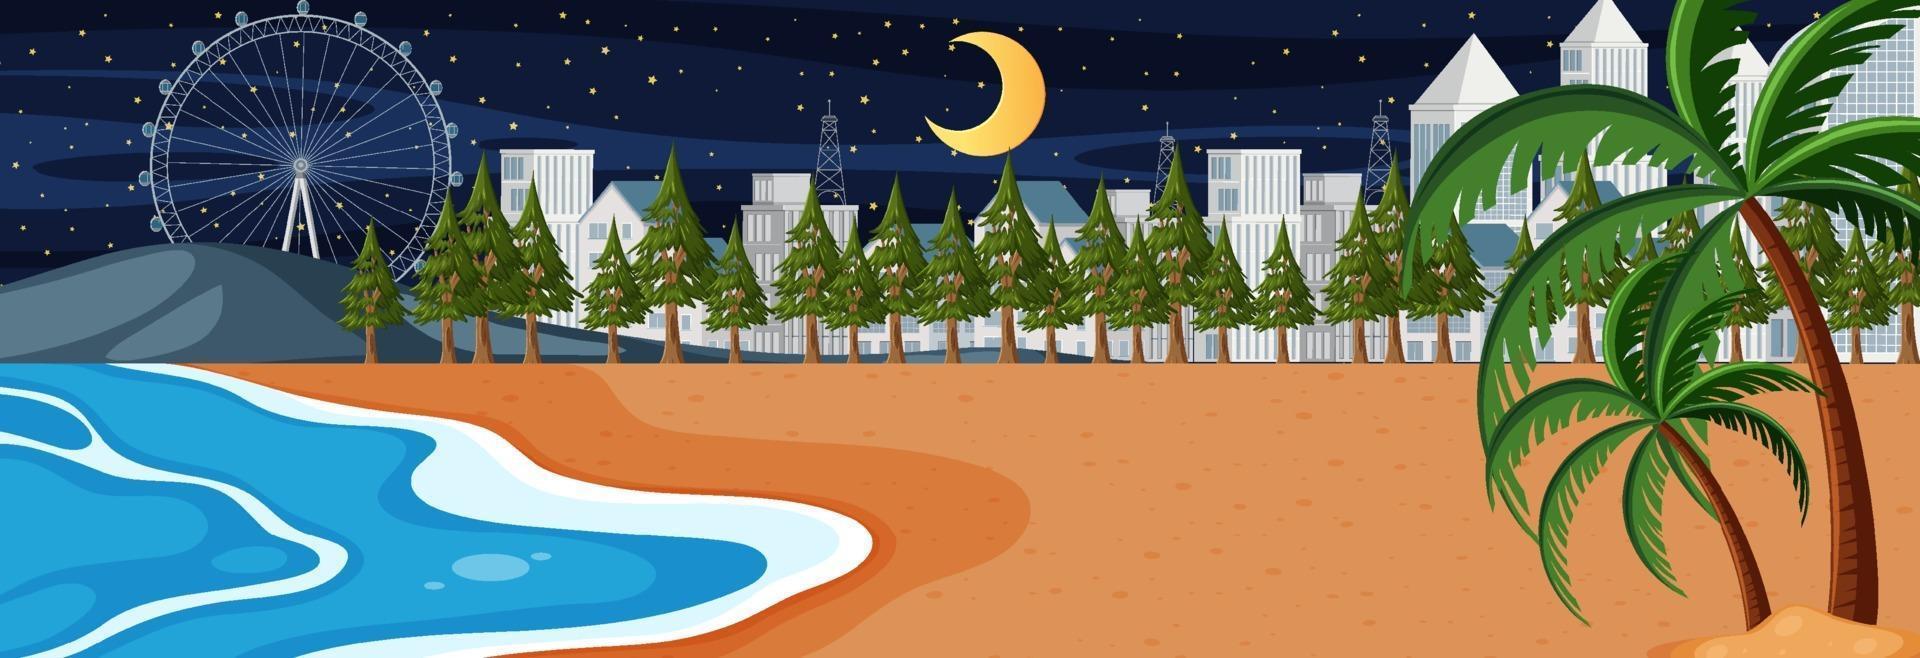 Escena horizontal de playa en la noche con fondo de paisaje urbano vector